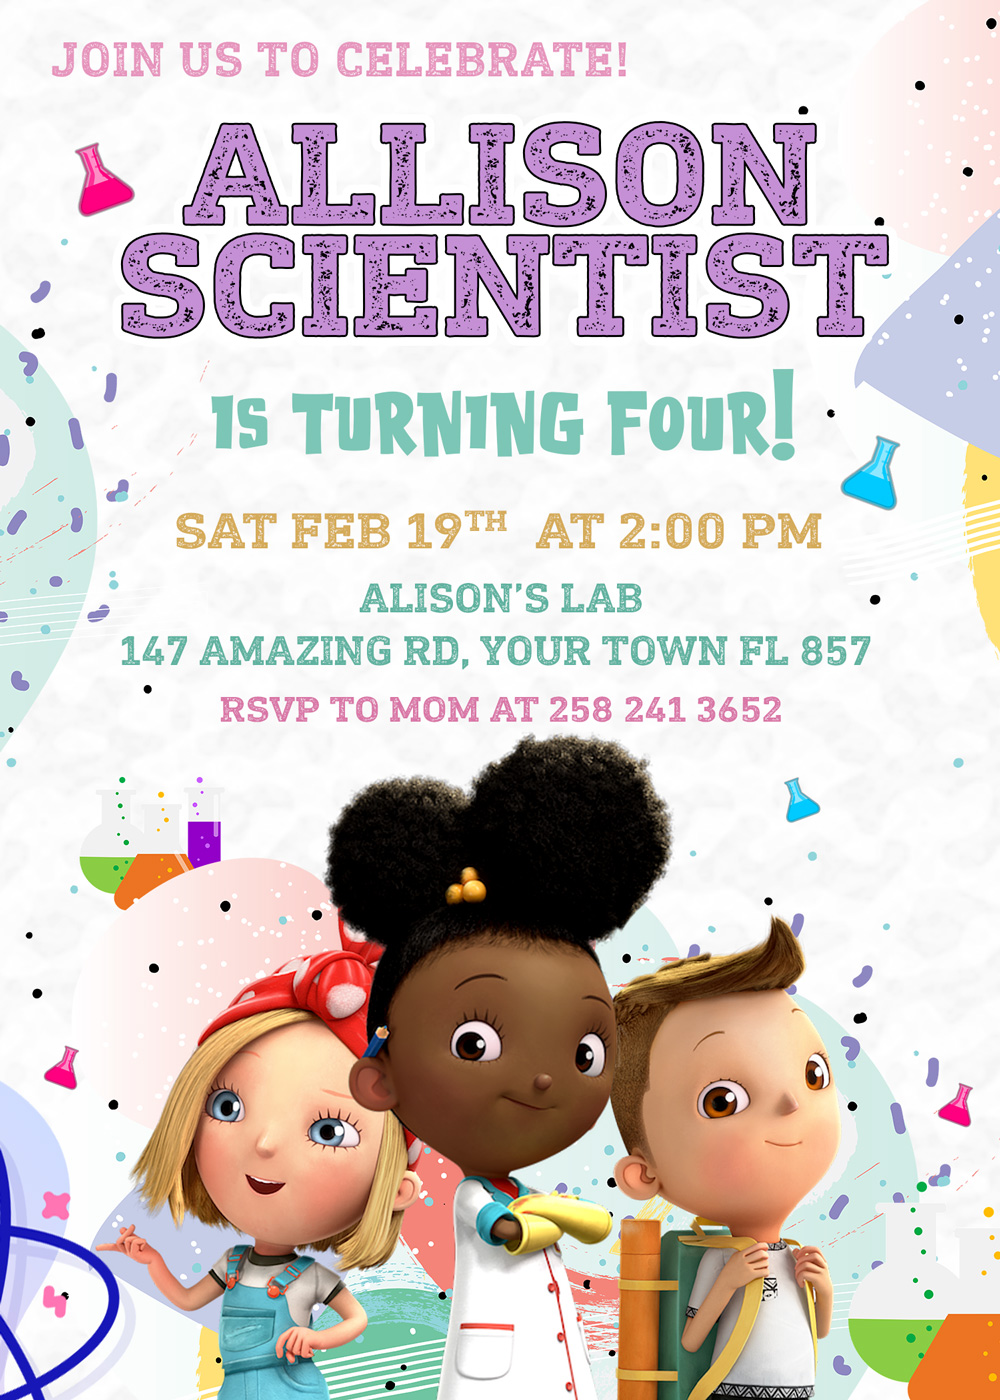 Ada twist scientist birthday invitation